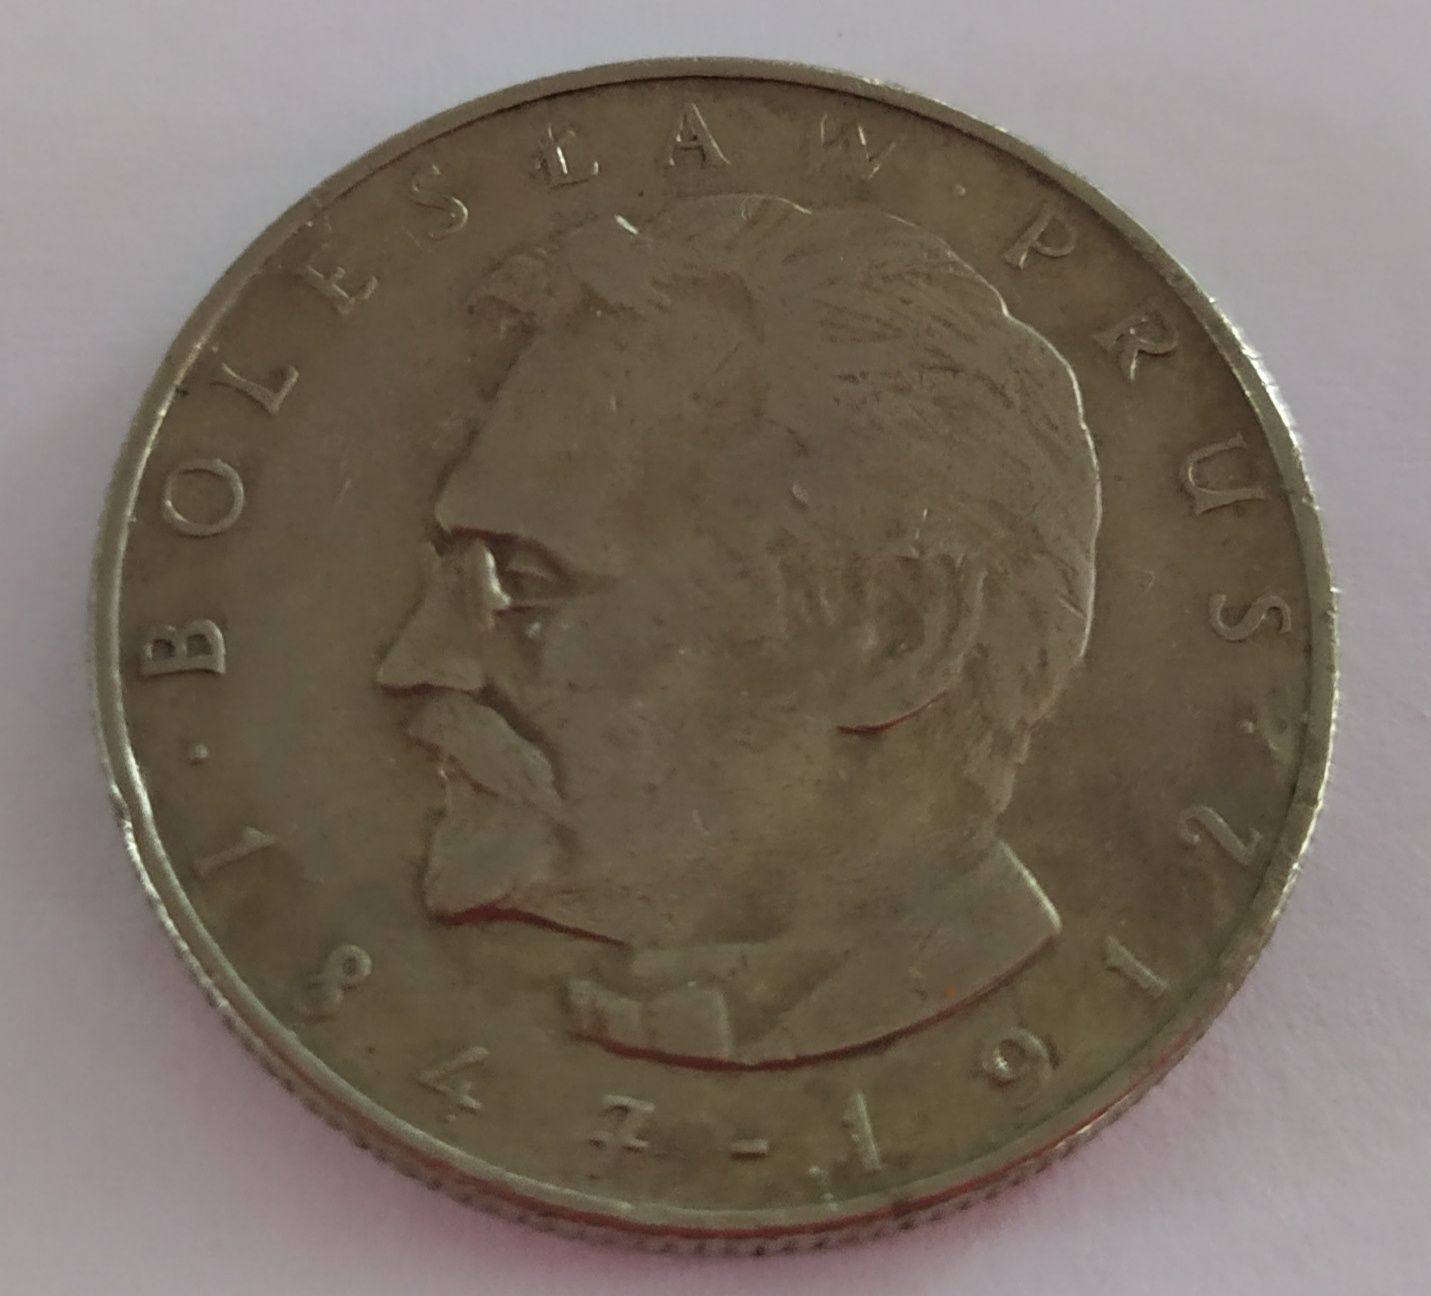 Moneta kolekcjonerska 10 zł z 1975 roku - BOLESŁAW PRUS